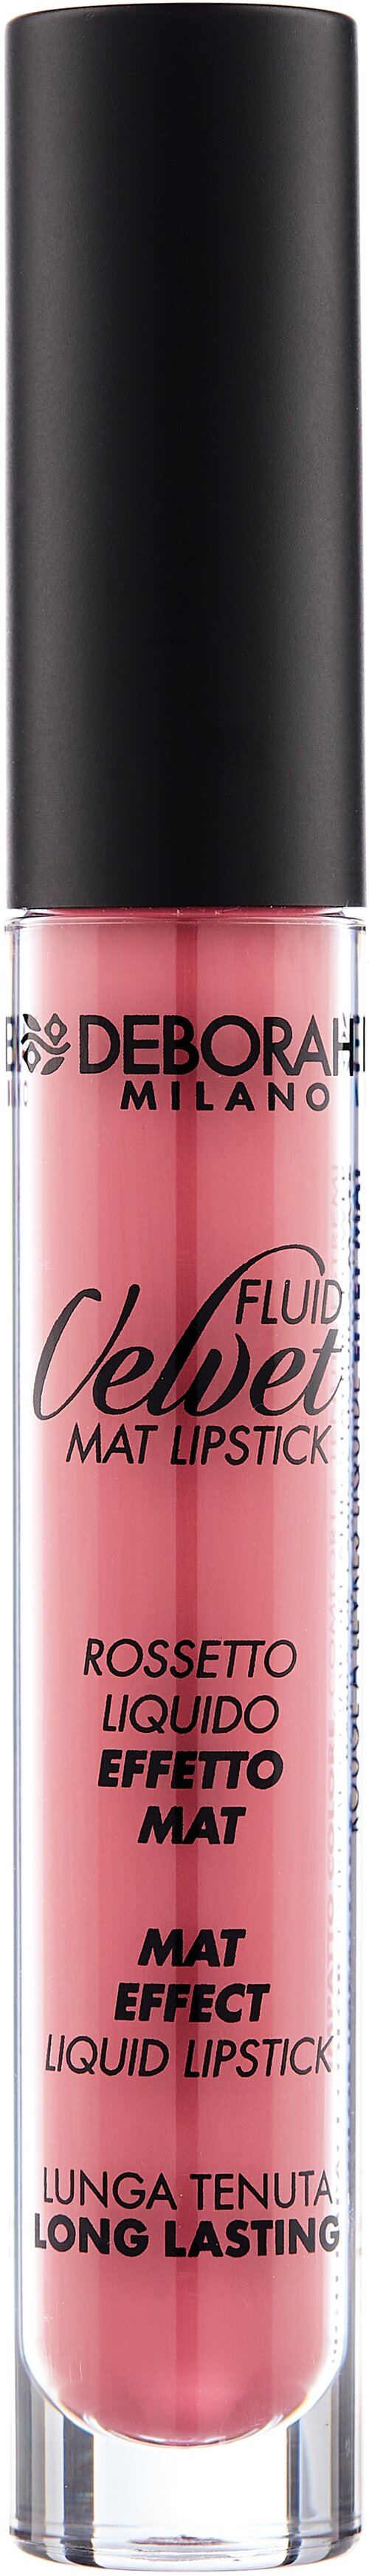 DEBORAH жидкая помада для губ матовая Fluid Velvet Mat Lipstick, оттенок 08 classy mauve